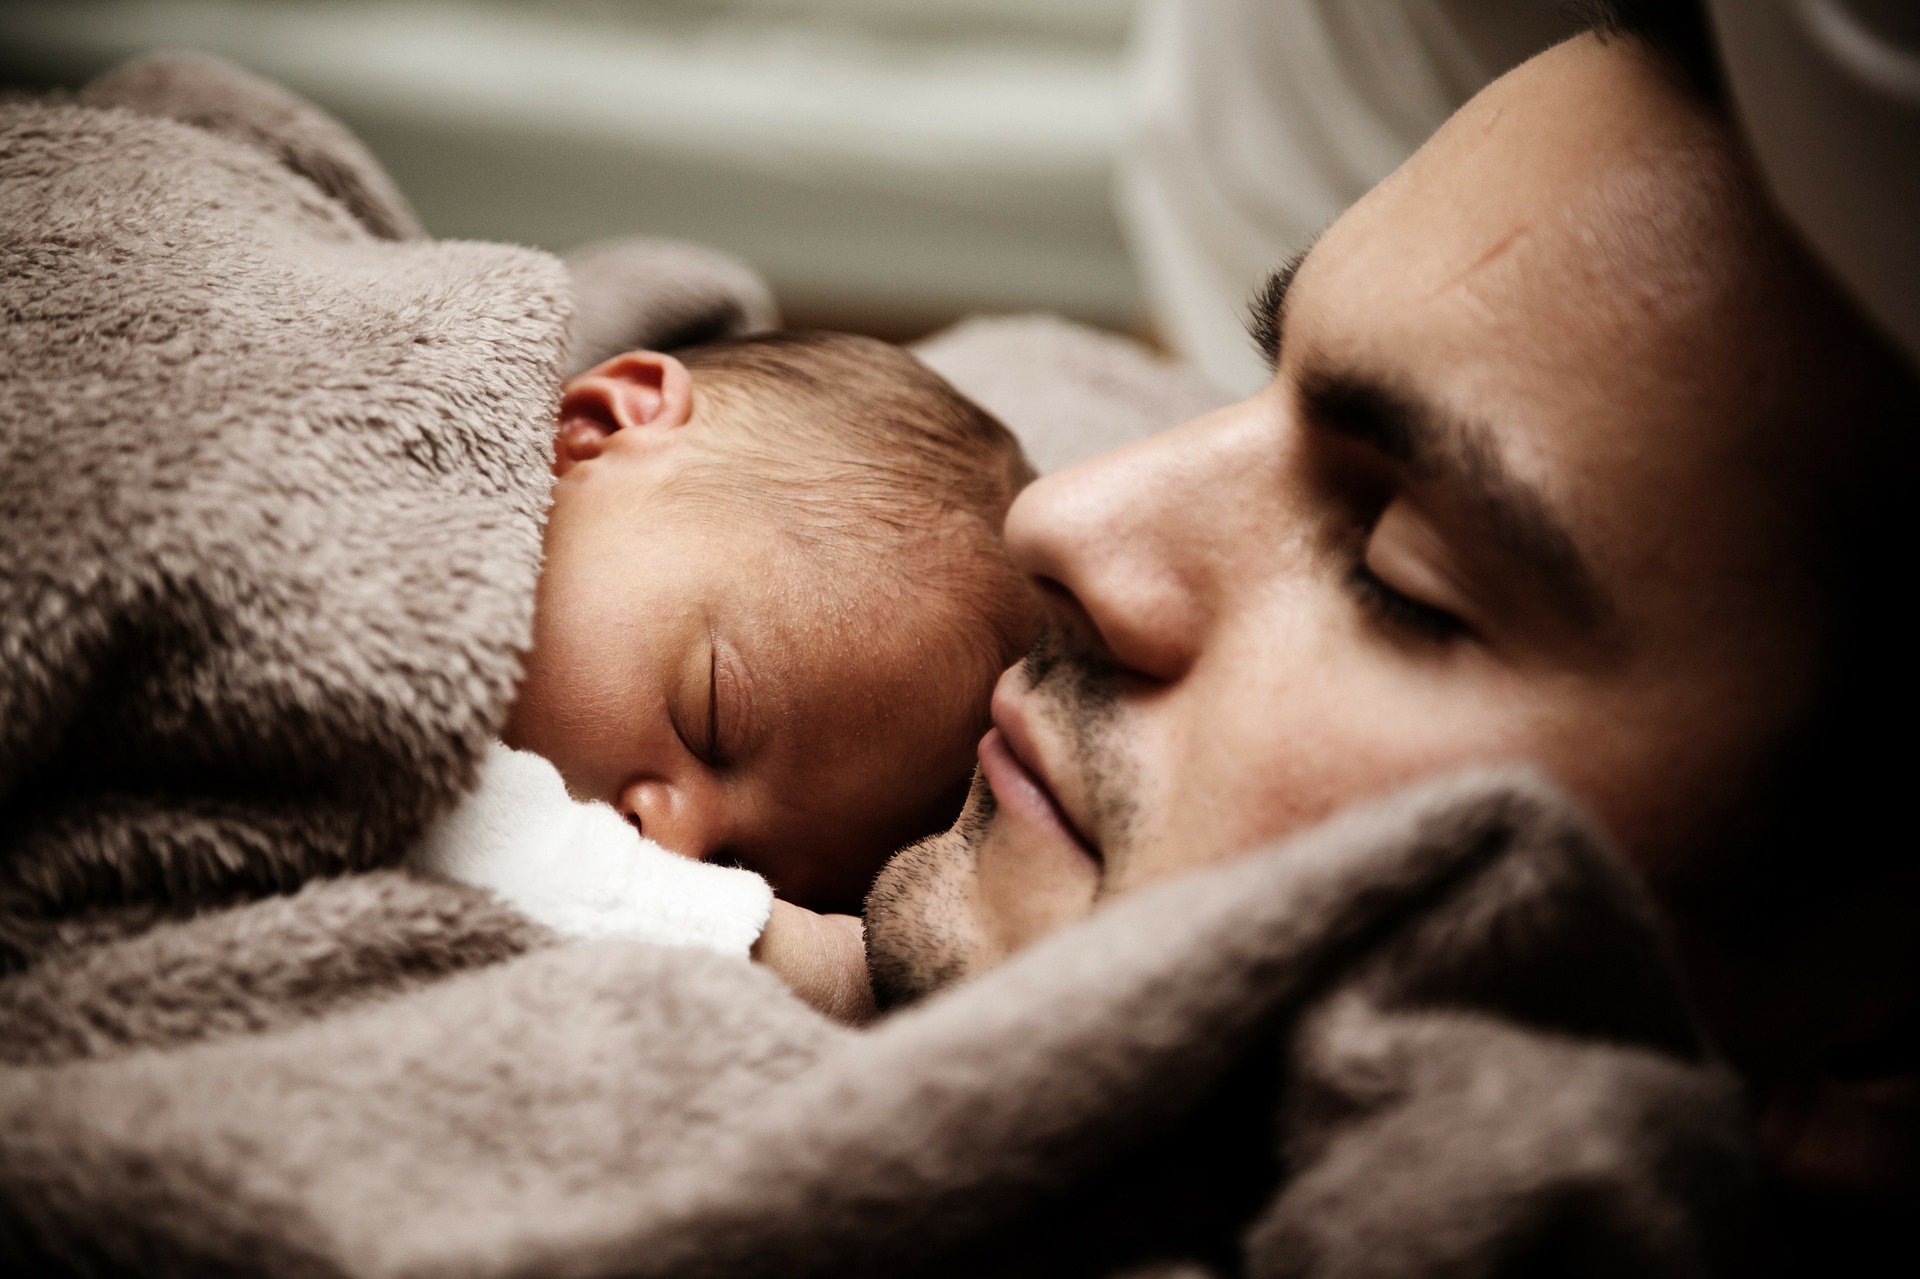 Tatusiowe coraz częściej korzystają z urlopu ojcowskiego